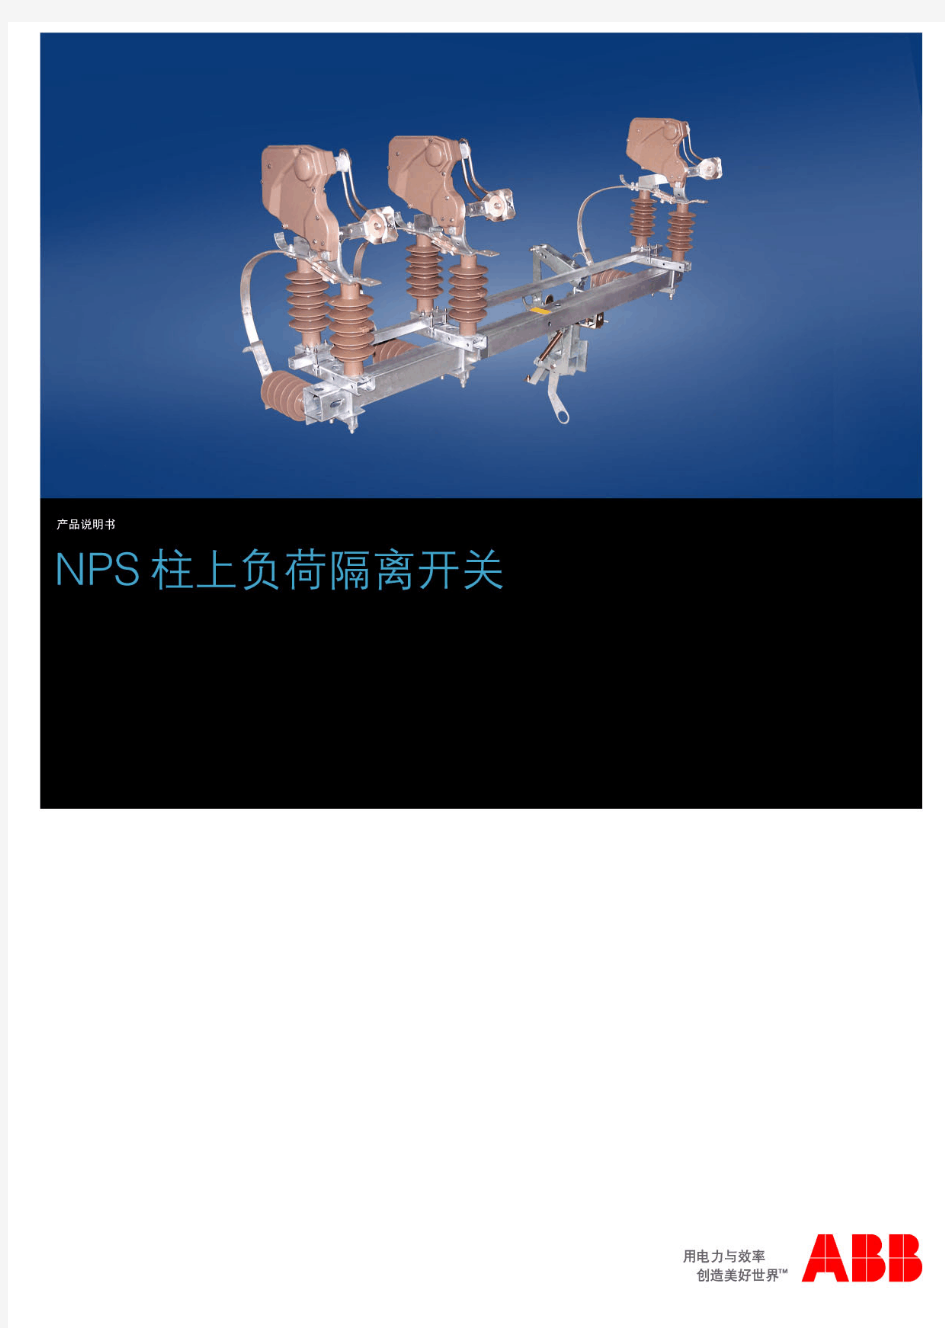 ABB NPS 隔离开关_CN_200902